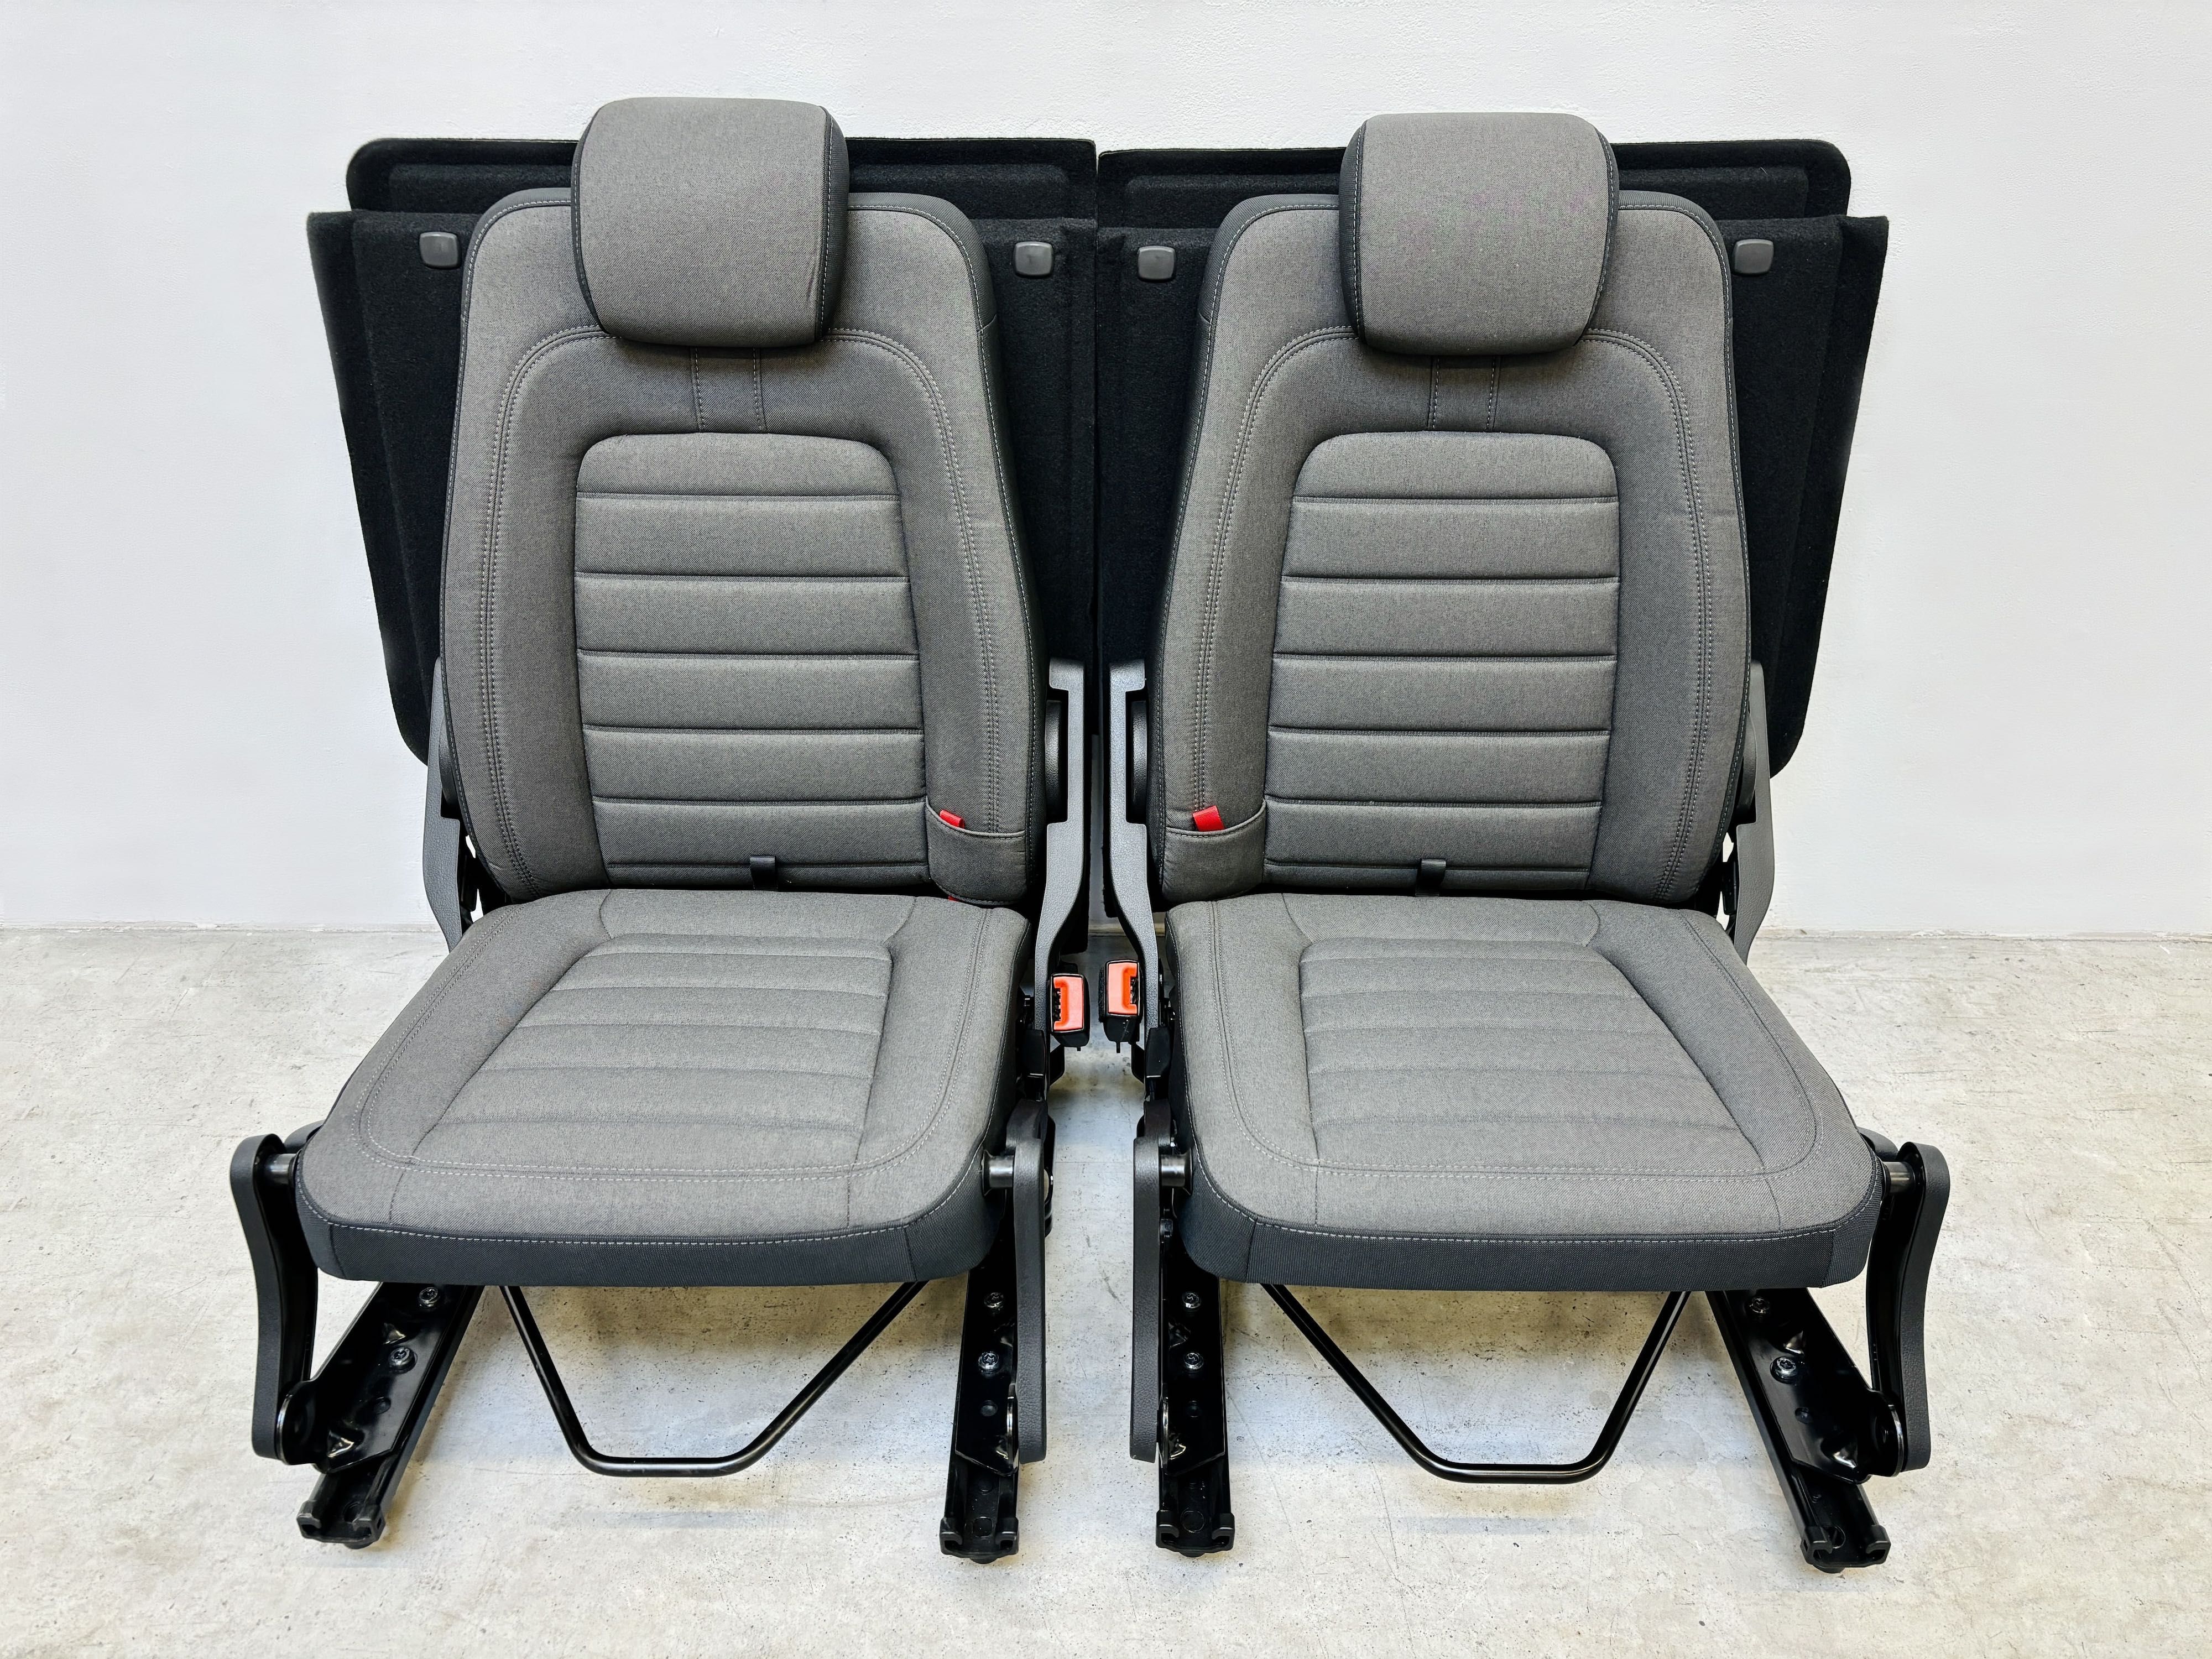 Nowe oryginalne fotele | Ford Connect II | Duża ilość